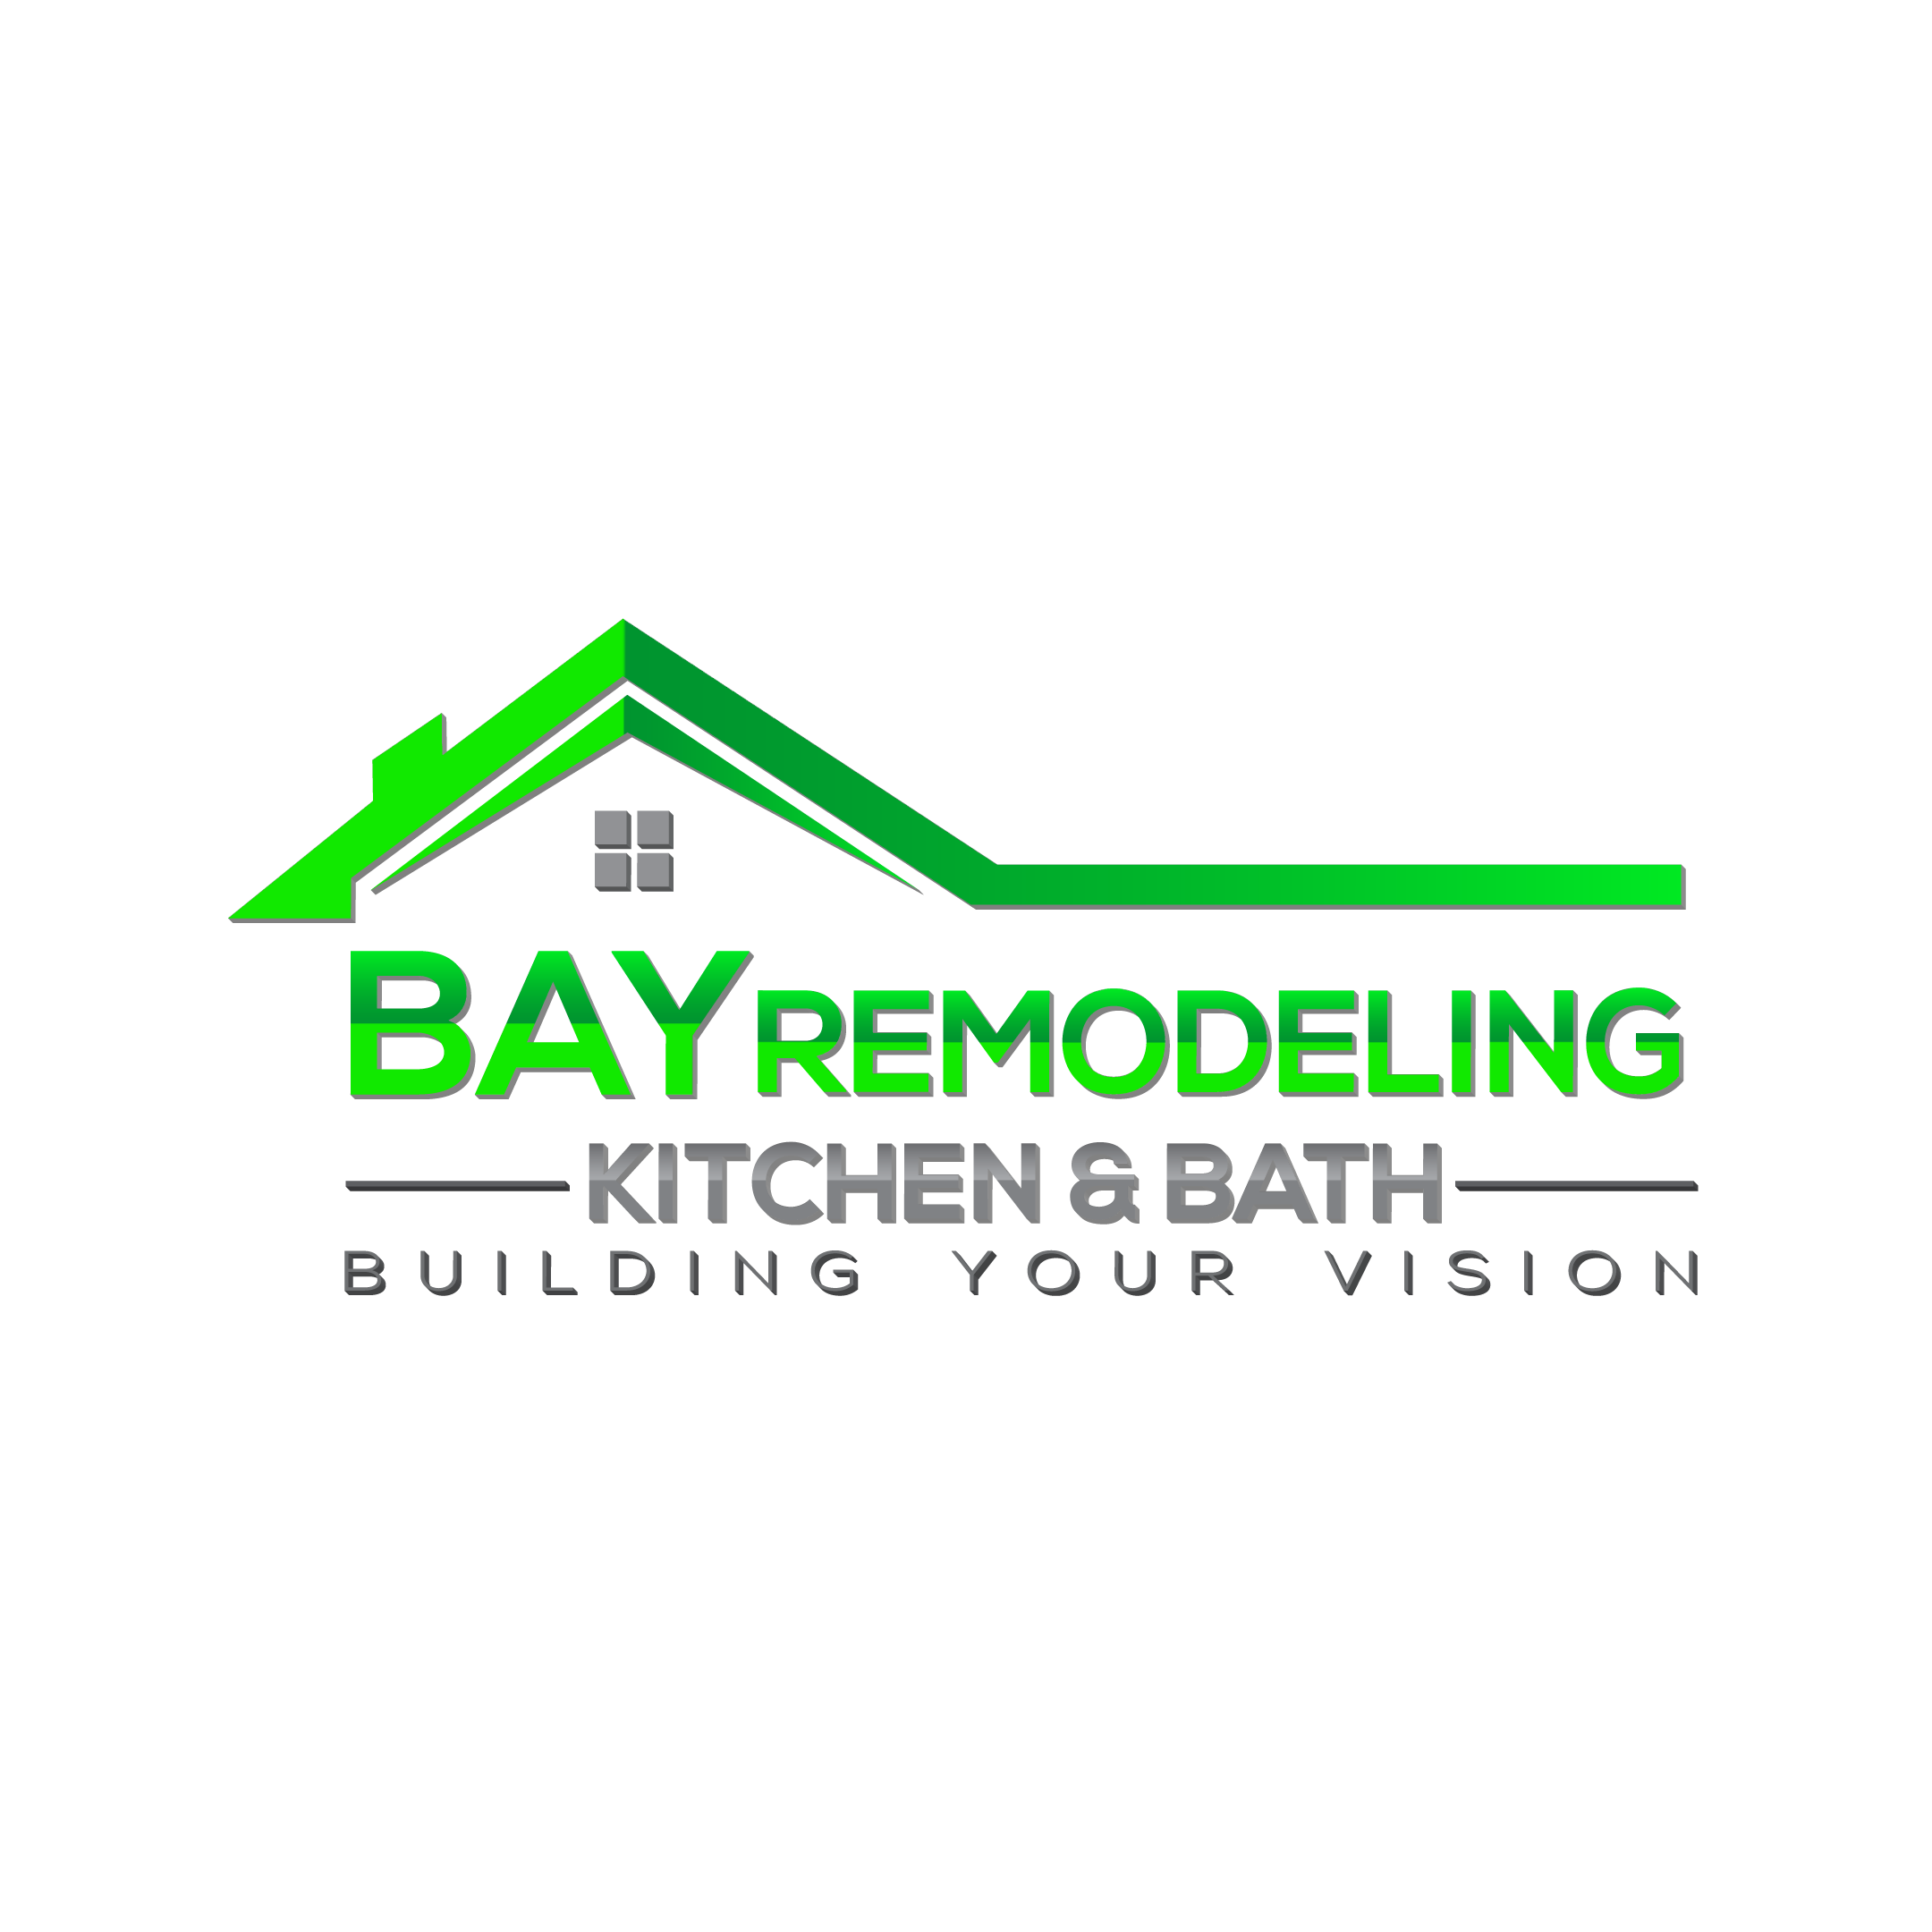 Bay Remodeling Kitchen & Bath, Inc. Logo